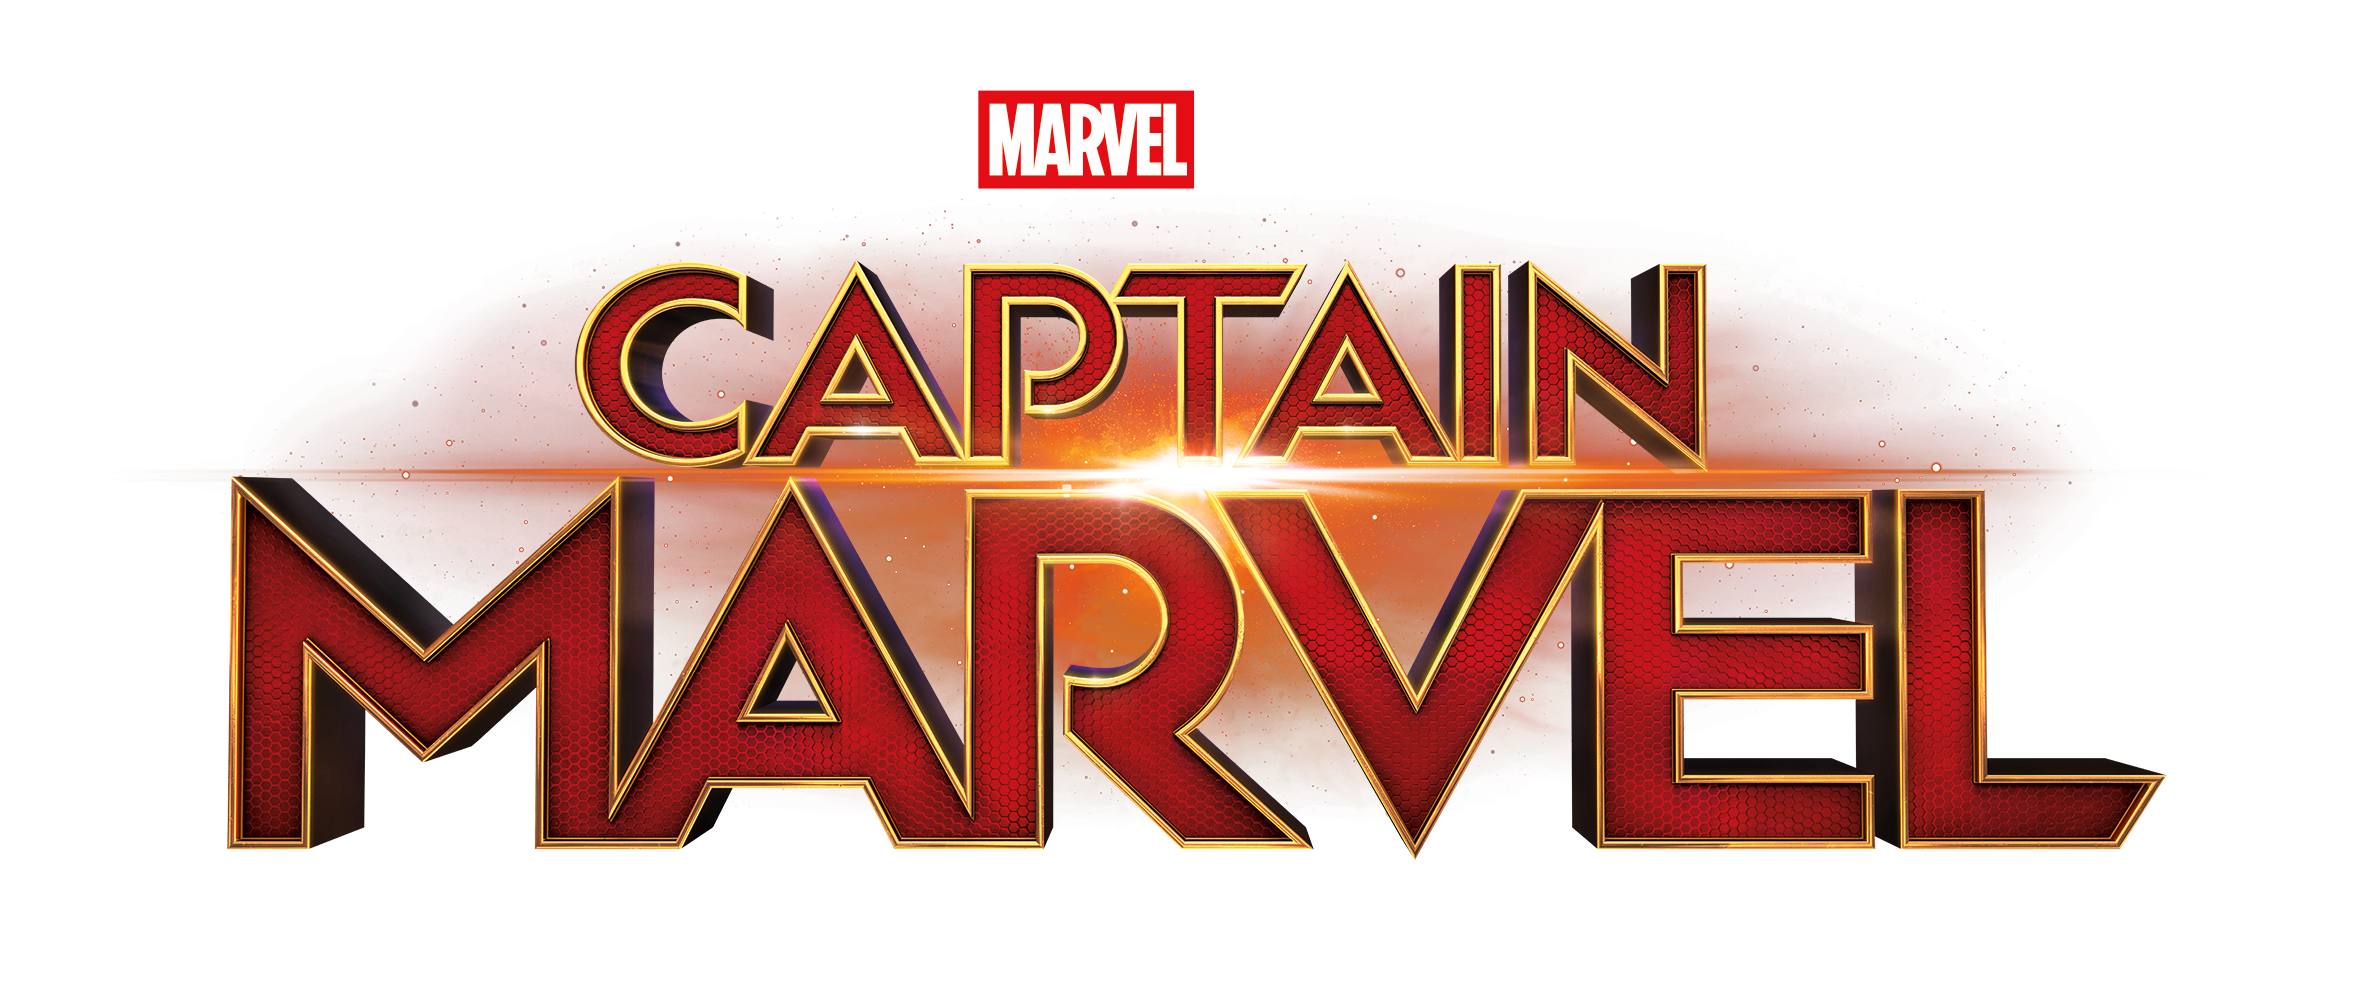 Captain Marvel logo